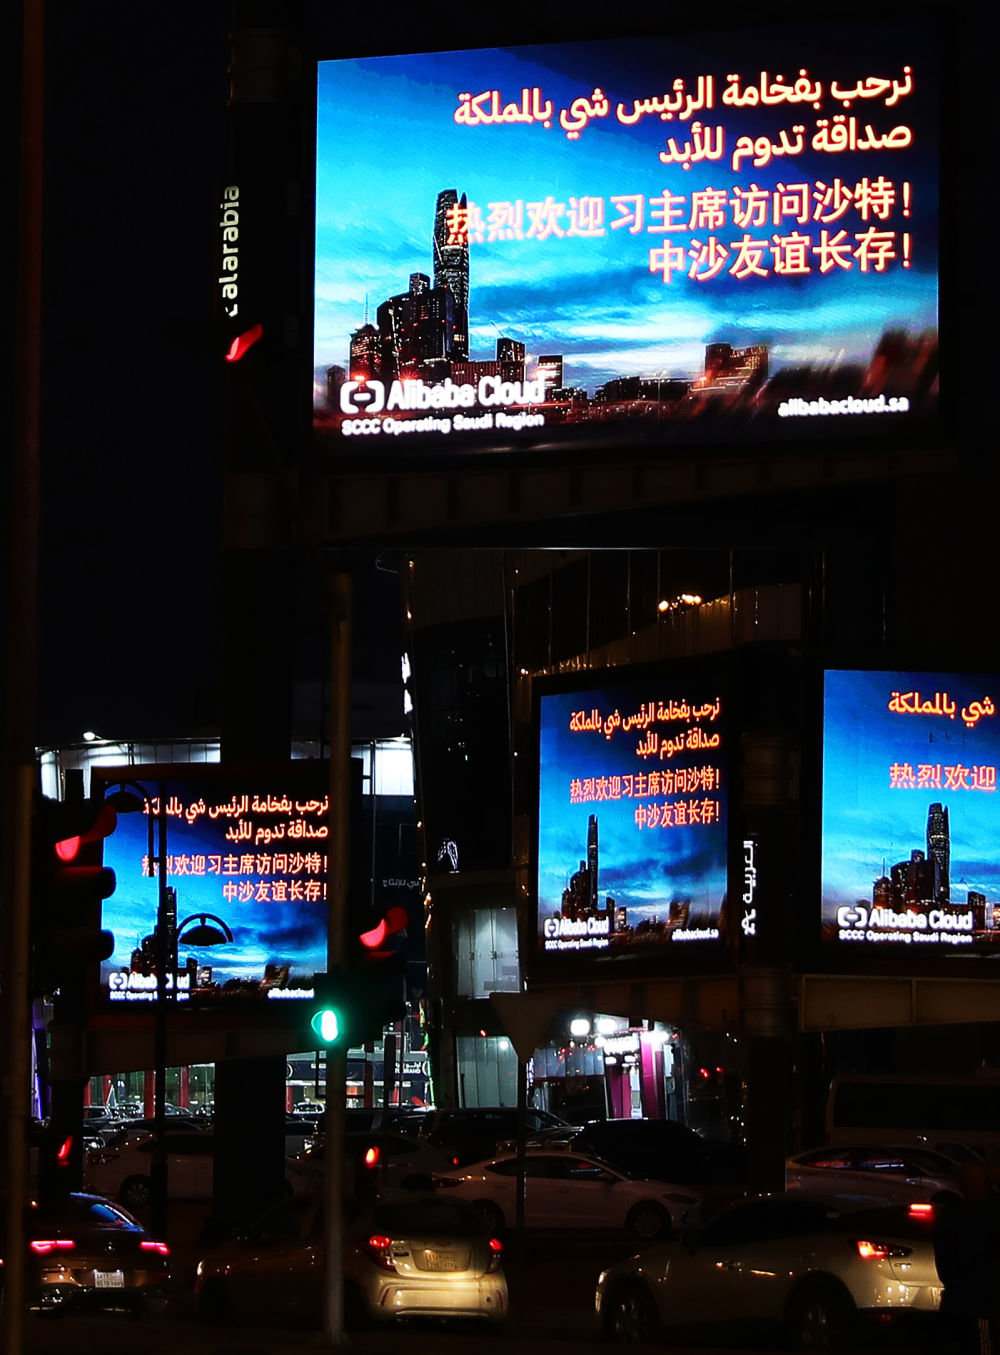 这是利雅得街头的电子屏。新华社记者王东震摄